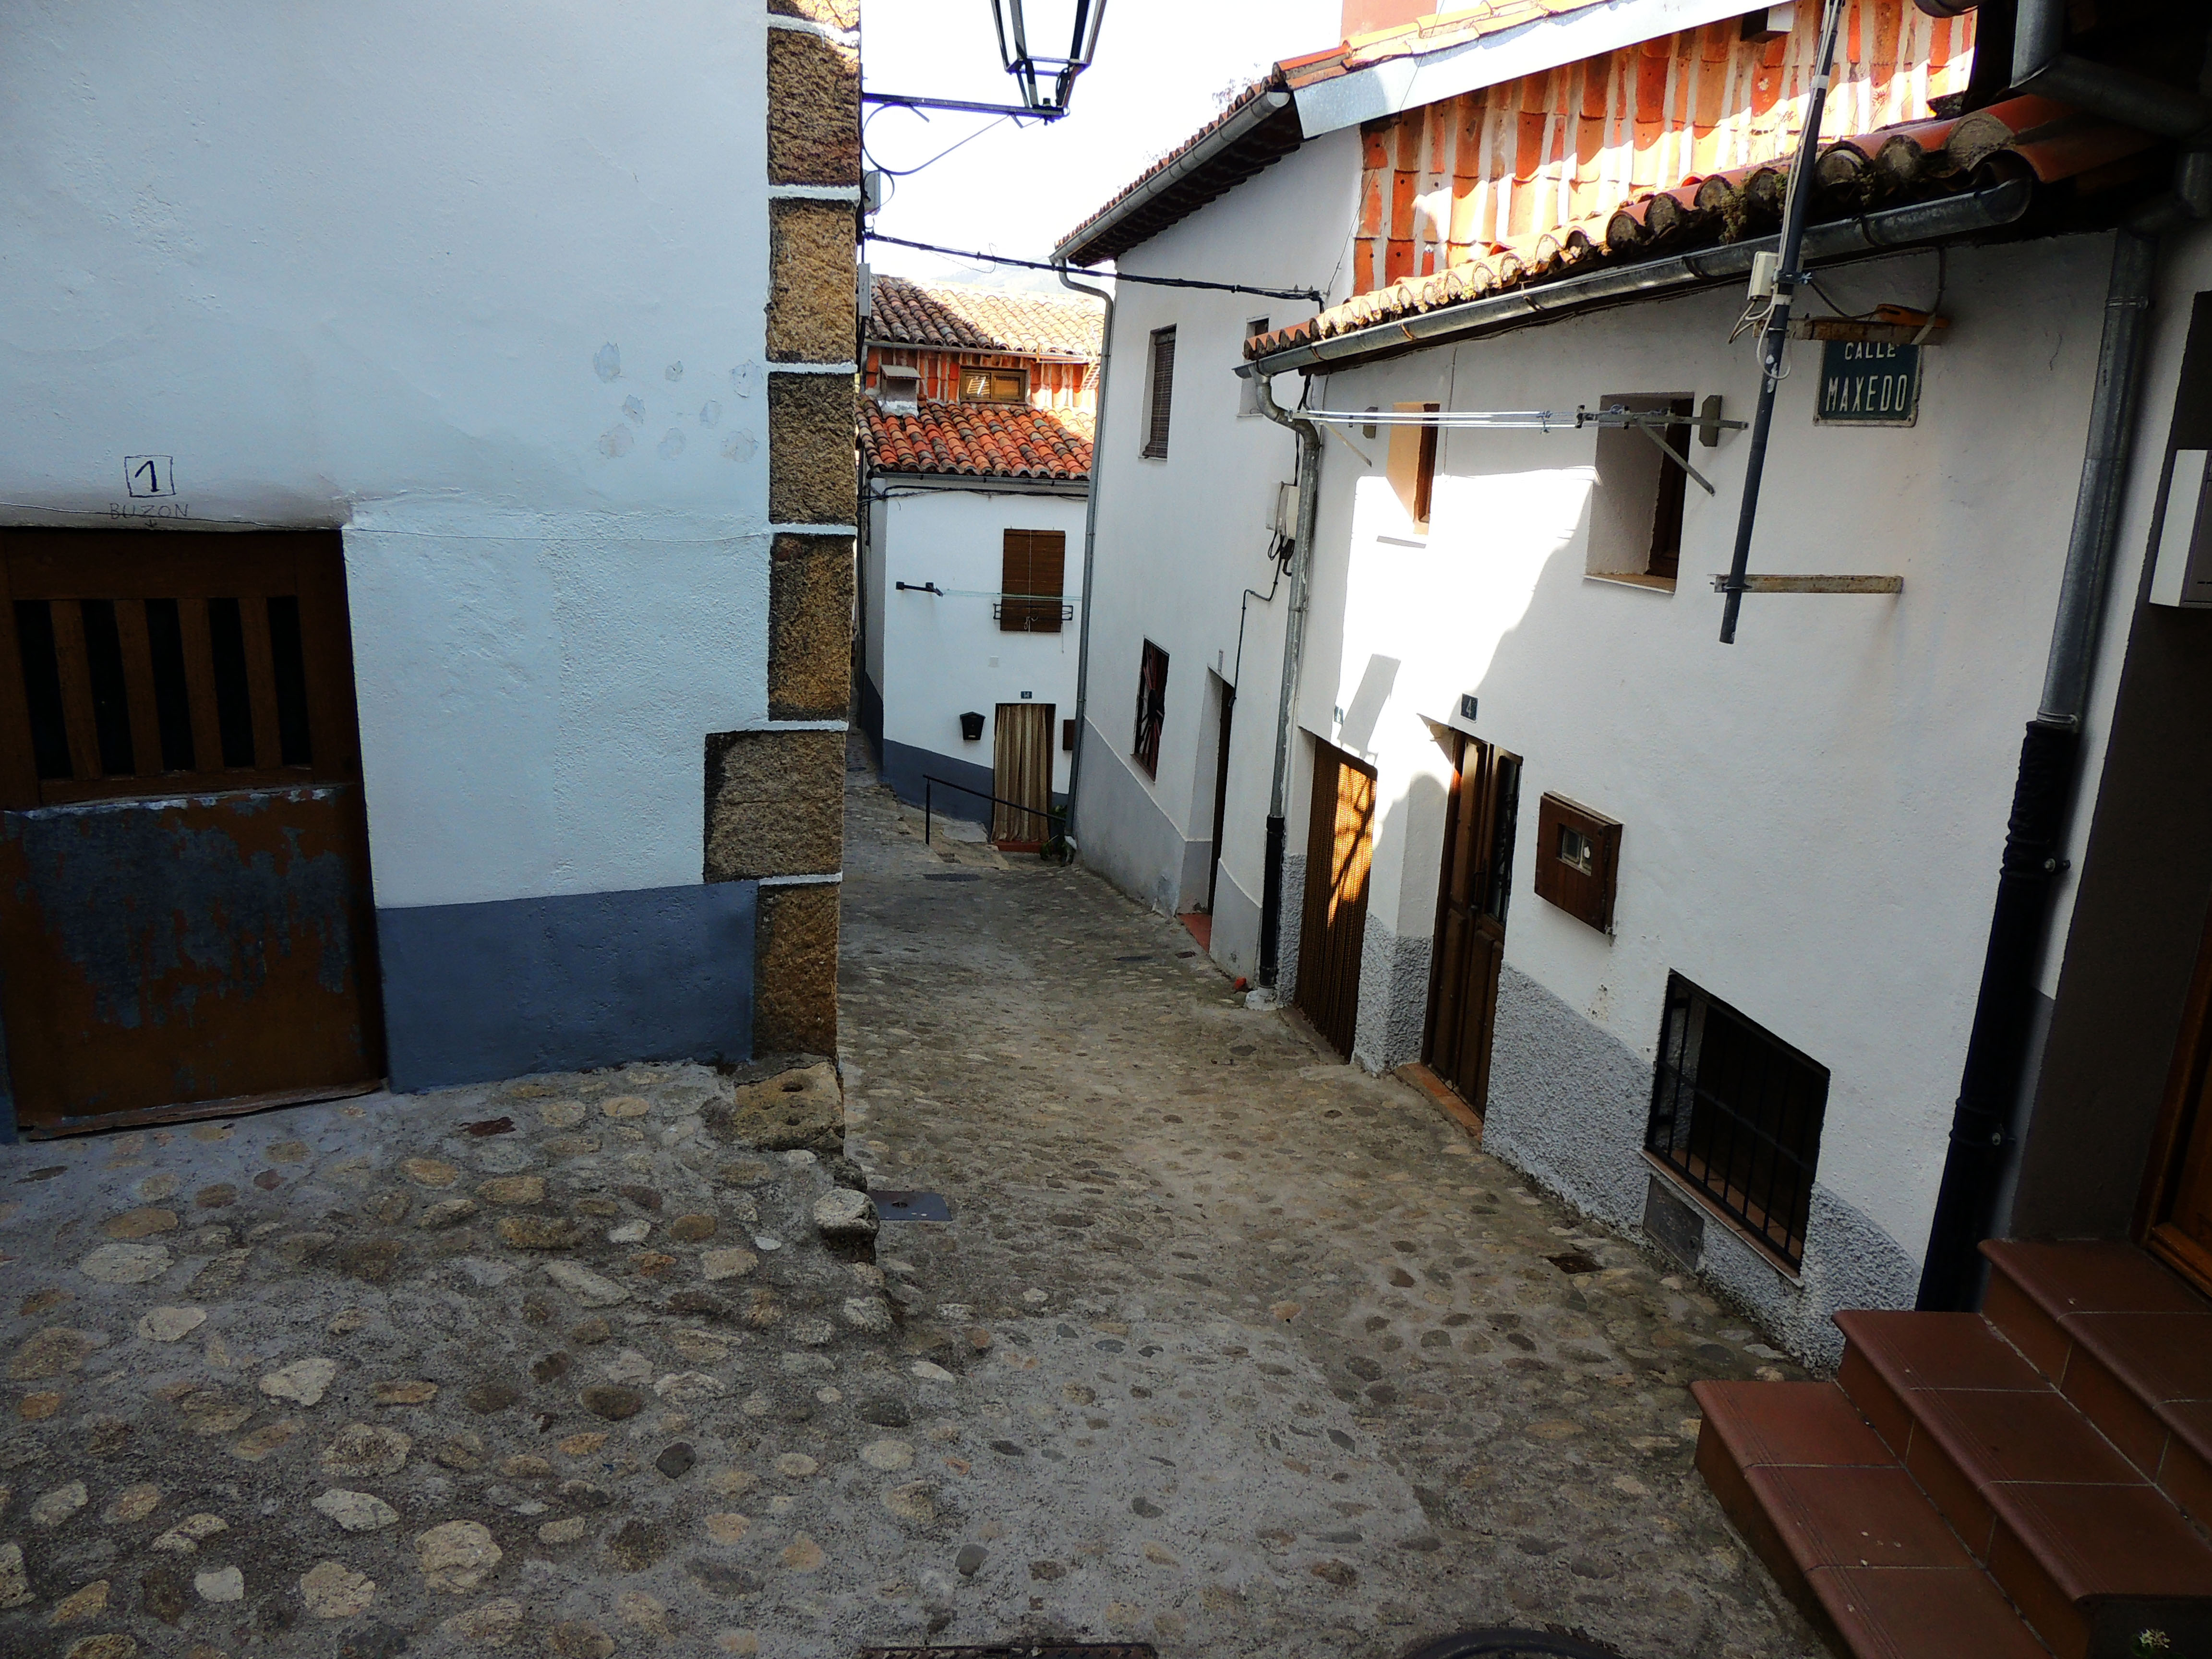 Foto de Hevás (Cáceres), España